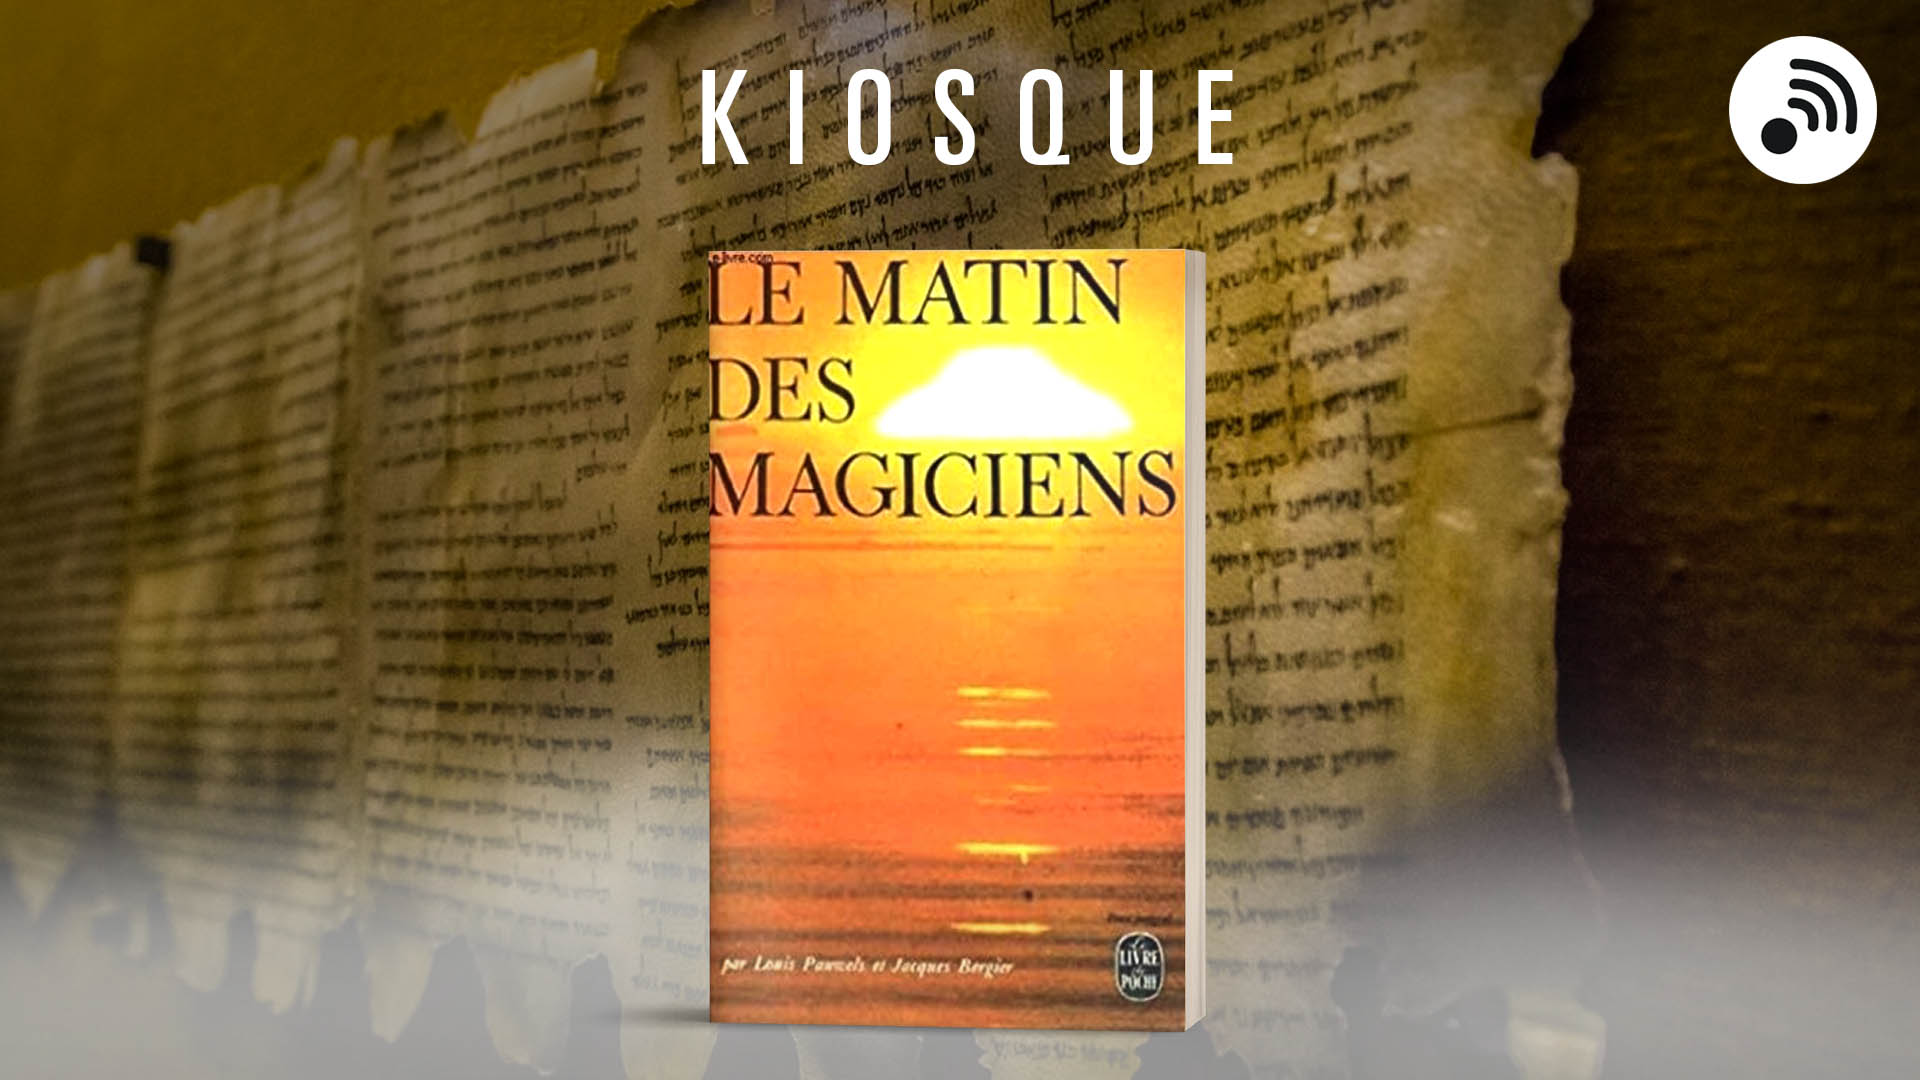 Le matin des magiciens - introduction au réalisme fantastique - le livre  poche n°1167-1168-1169 de Pauwels L./Bergier J.